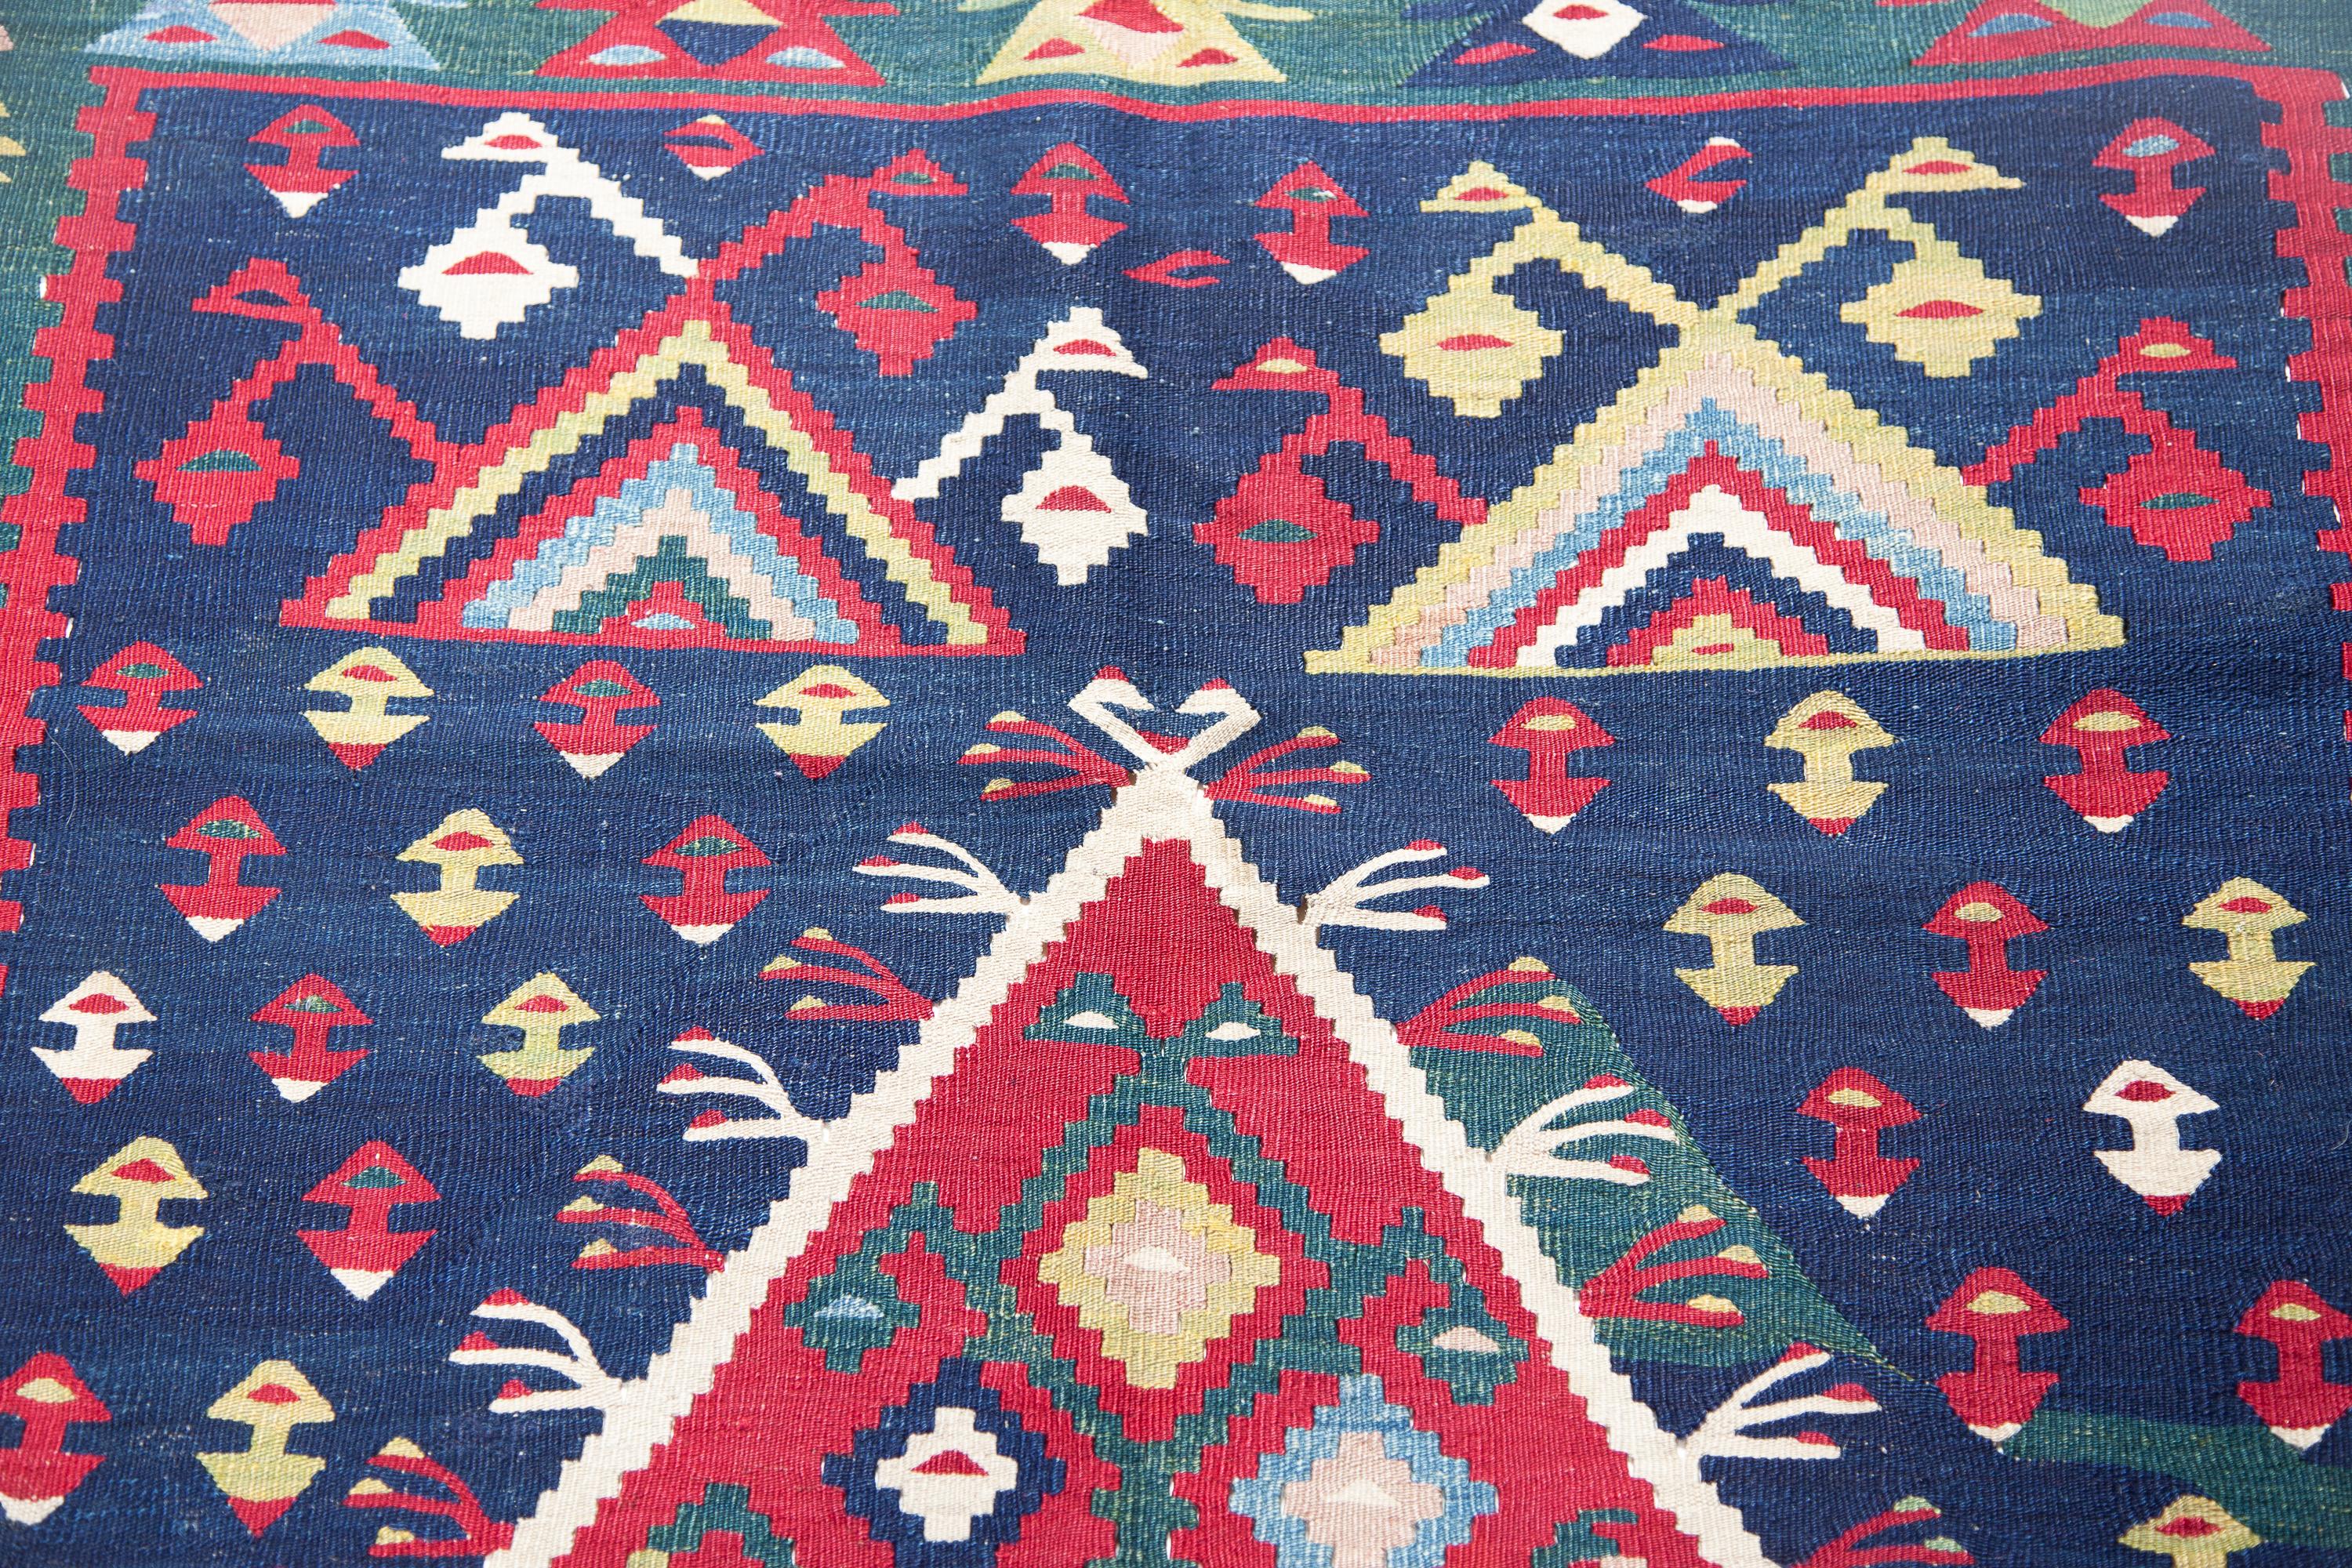 Coussins en soie Ikat au design riche et de grande qualité, soigneusement fabriqués un par un en Ouzbékistan, en Asie centrale.

Le recto et le verso sont en soie tissée à la main (ikat). Tous sont teints avec des colorants naturels.
Le modèle est